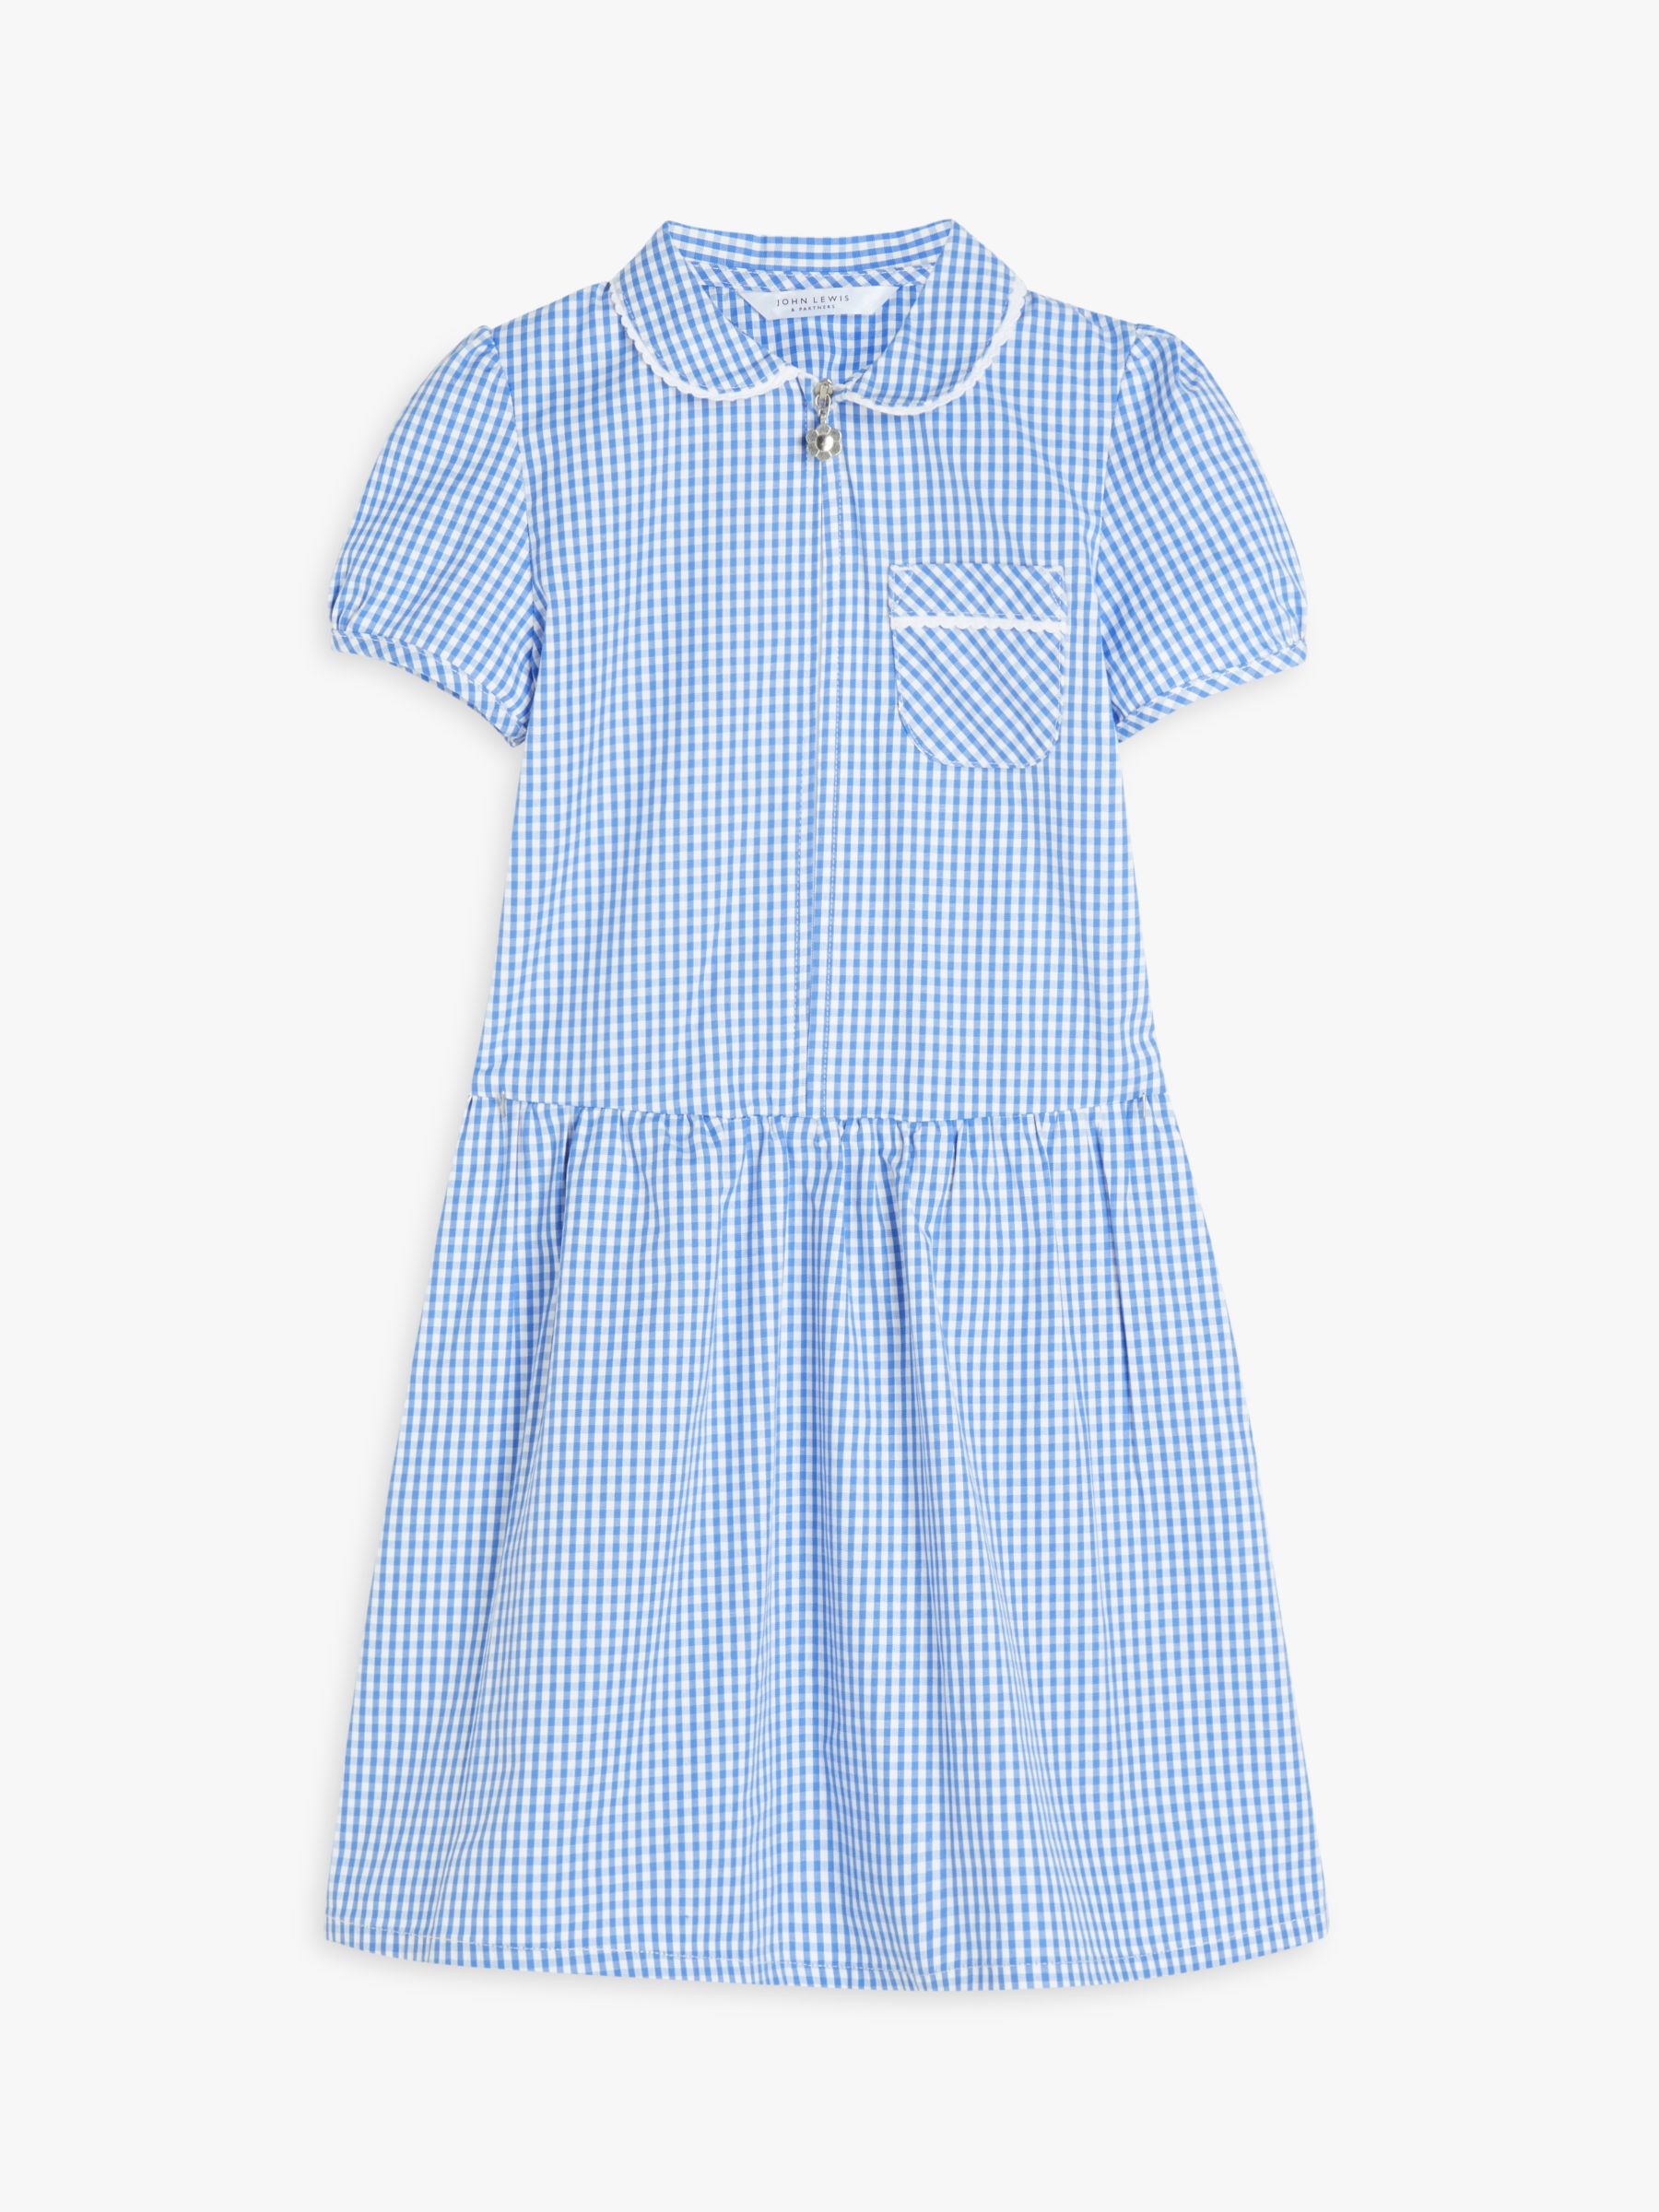 John Lewis School Gingham A-Line Summer Dress, Light Blue, 8 years